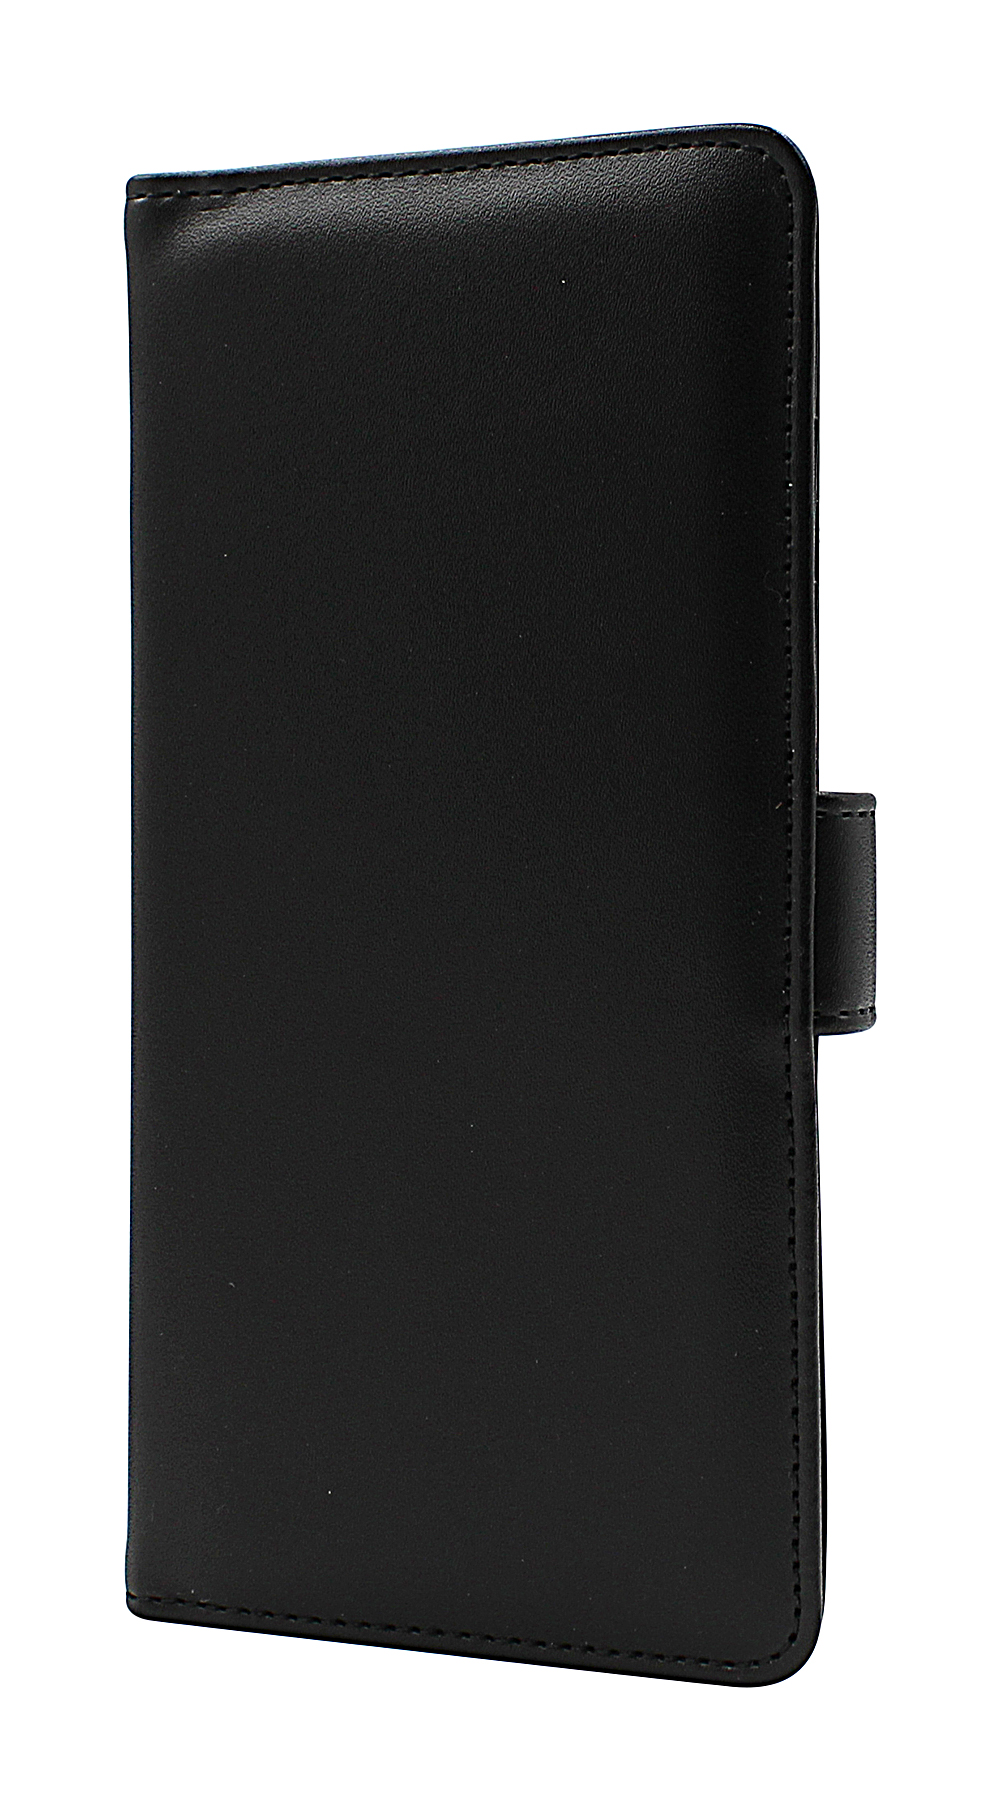 Skimblocker Mobiltaske OnePlus Nord N100